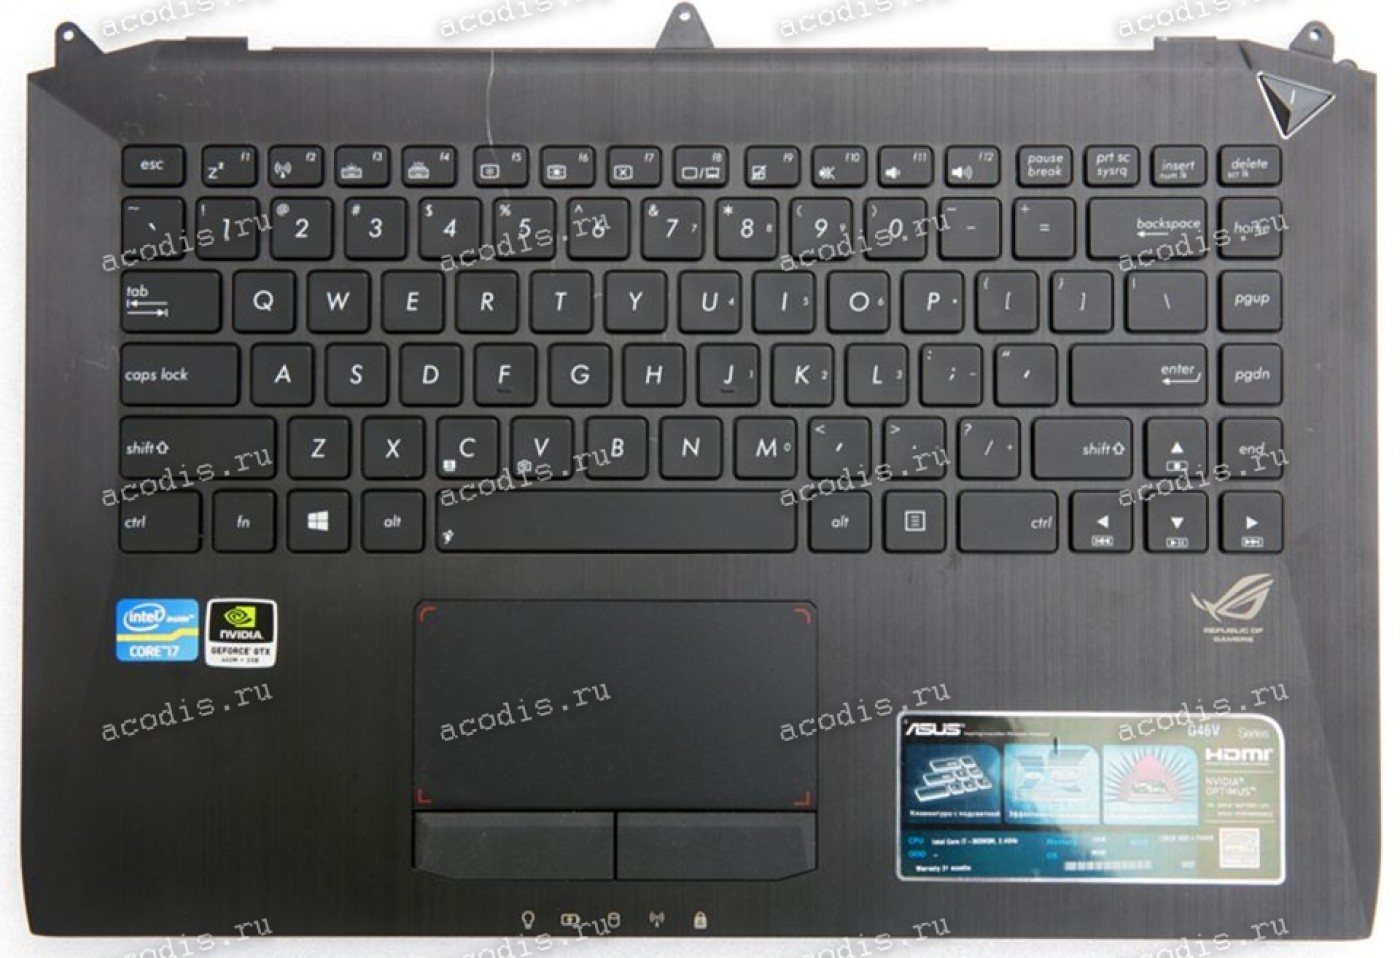 G 46 1. ASUS Keyboard SR-37 Datasheet.